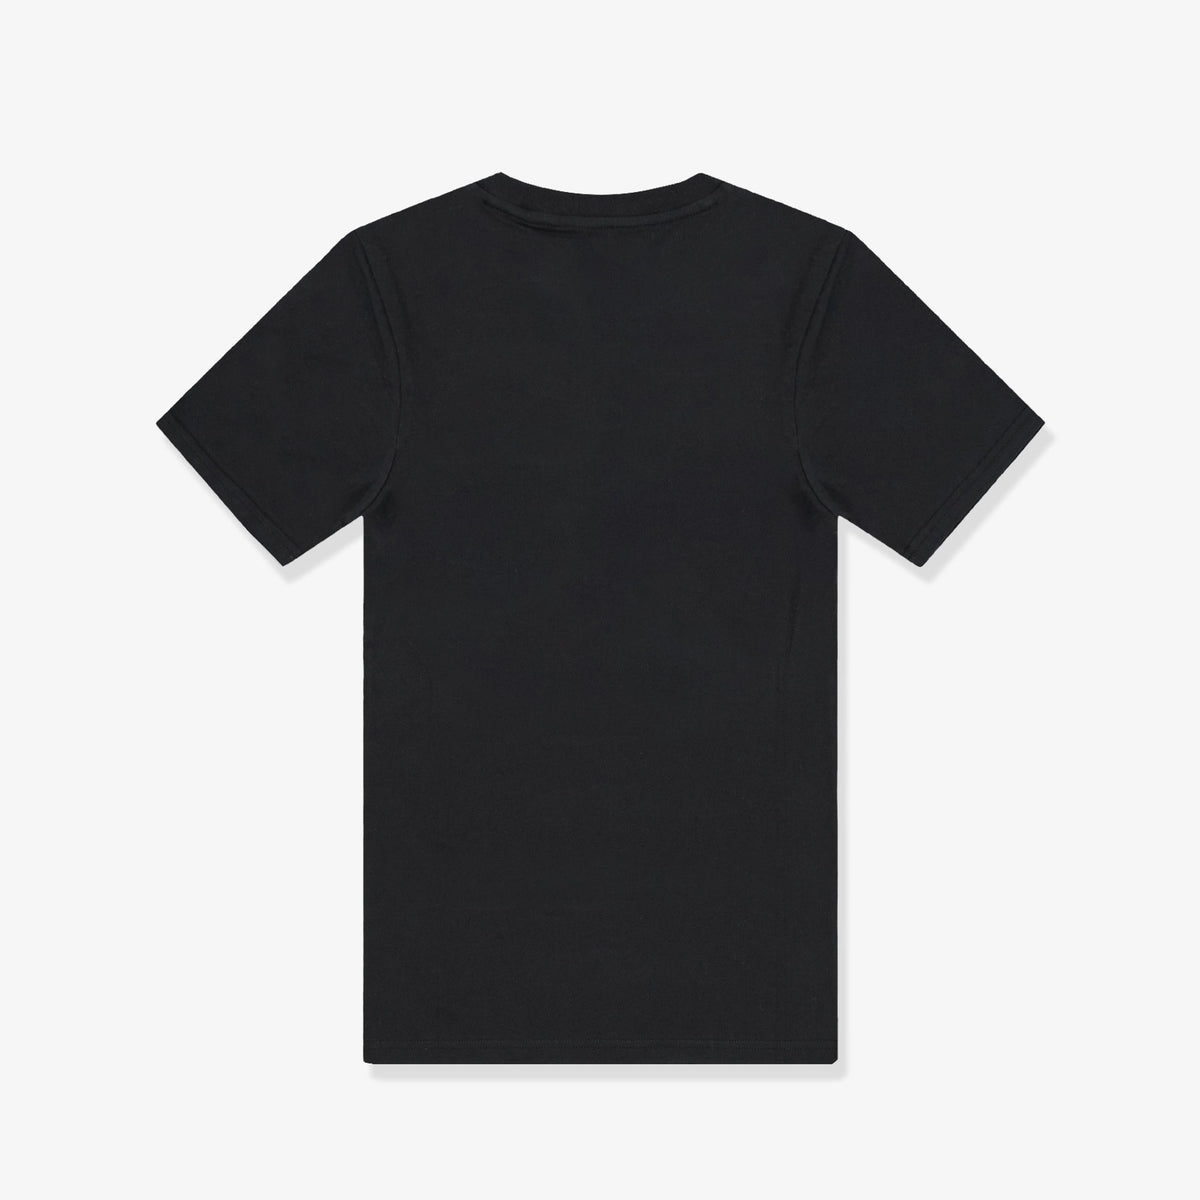 Jordan Jumpman Air Global Game Graphic Youth T-Shirt - Black